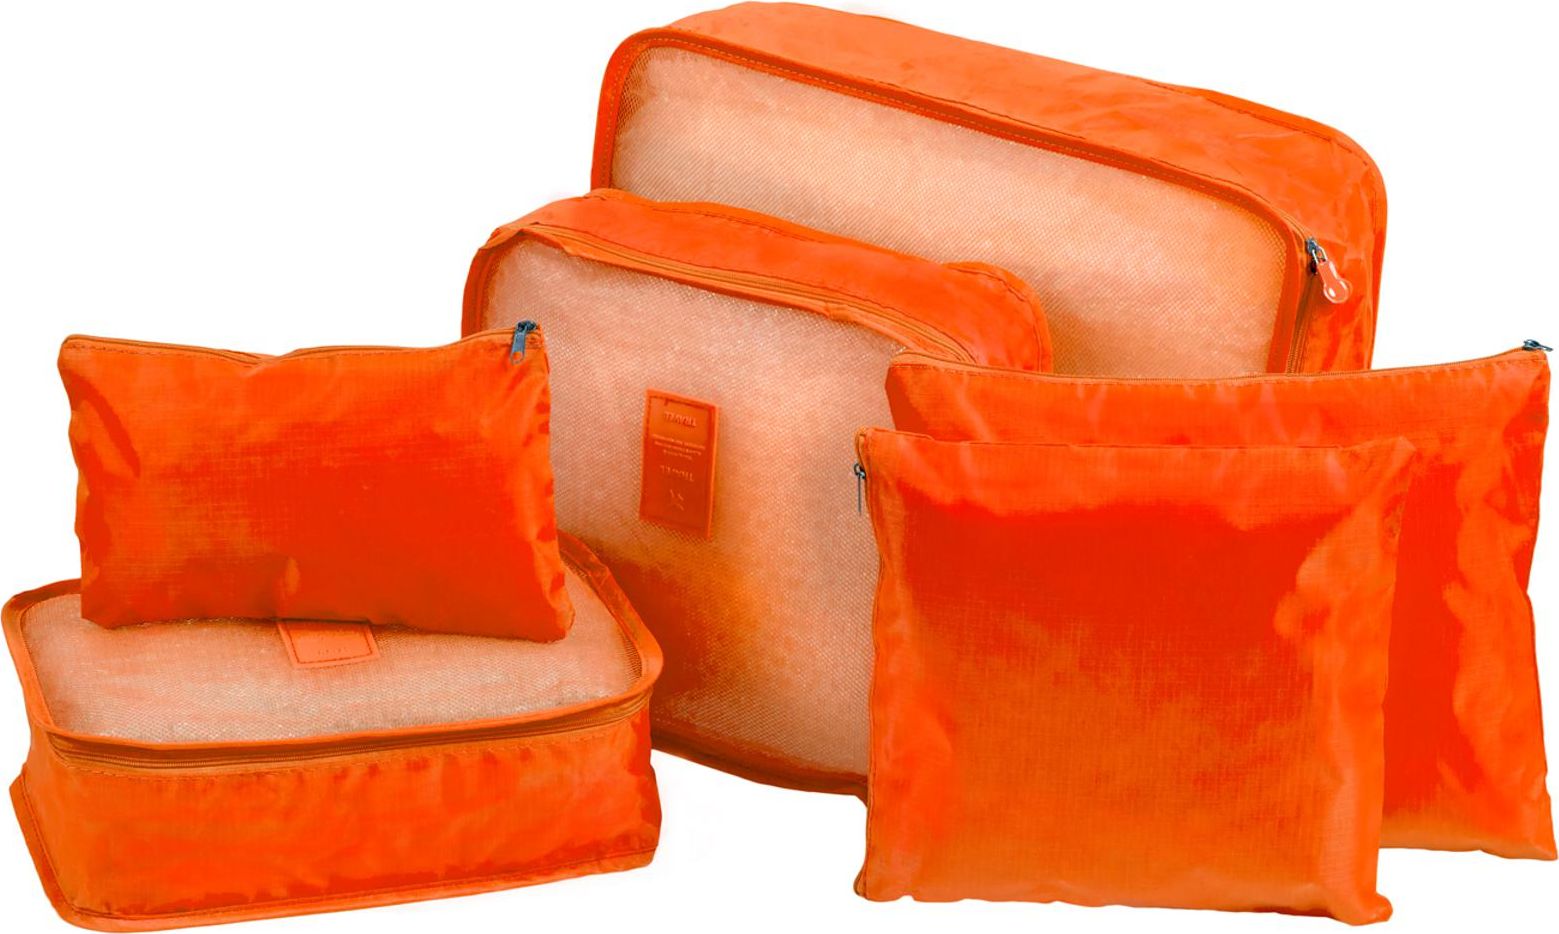 Органайзеры для хранения (набор 6 шт.), полиэстер, оранжевые